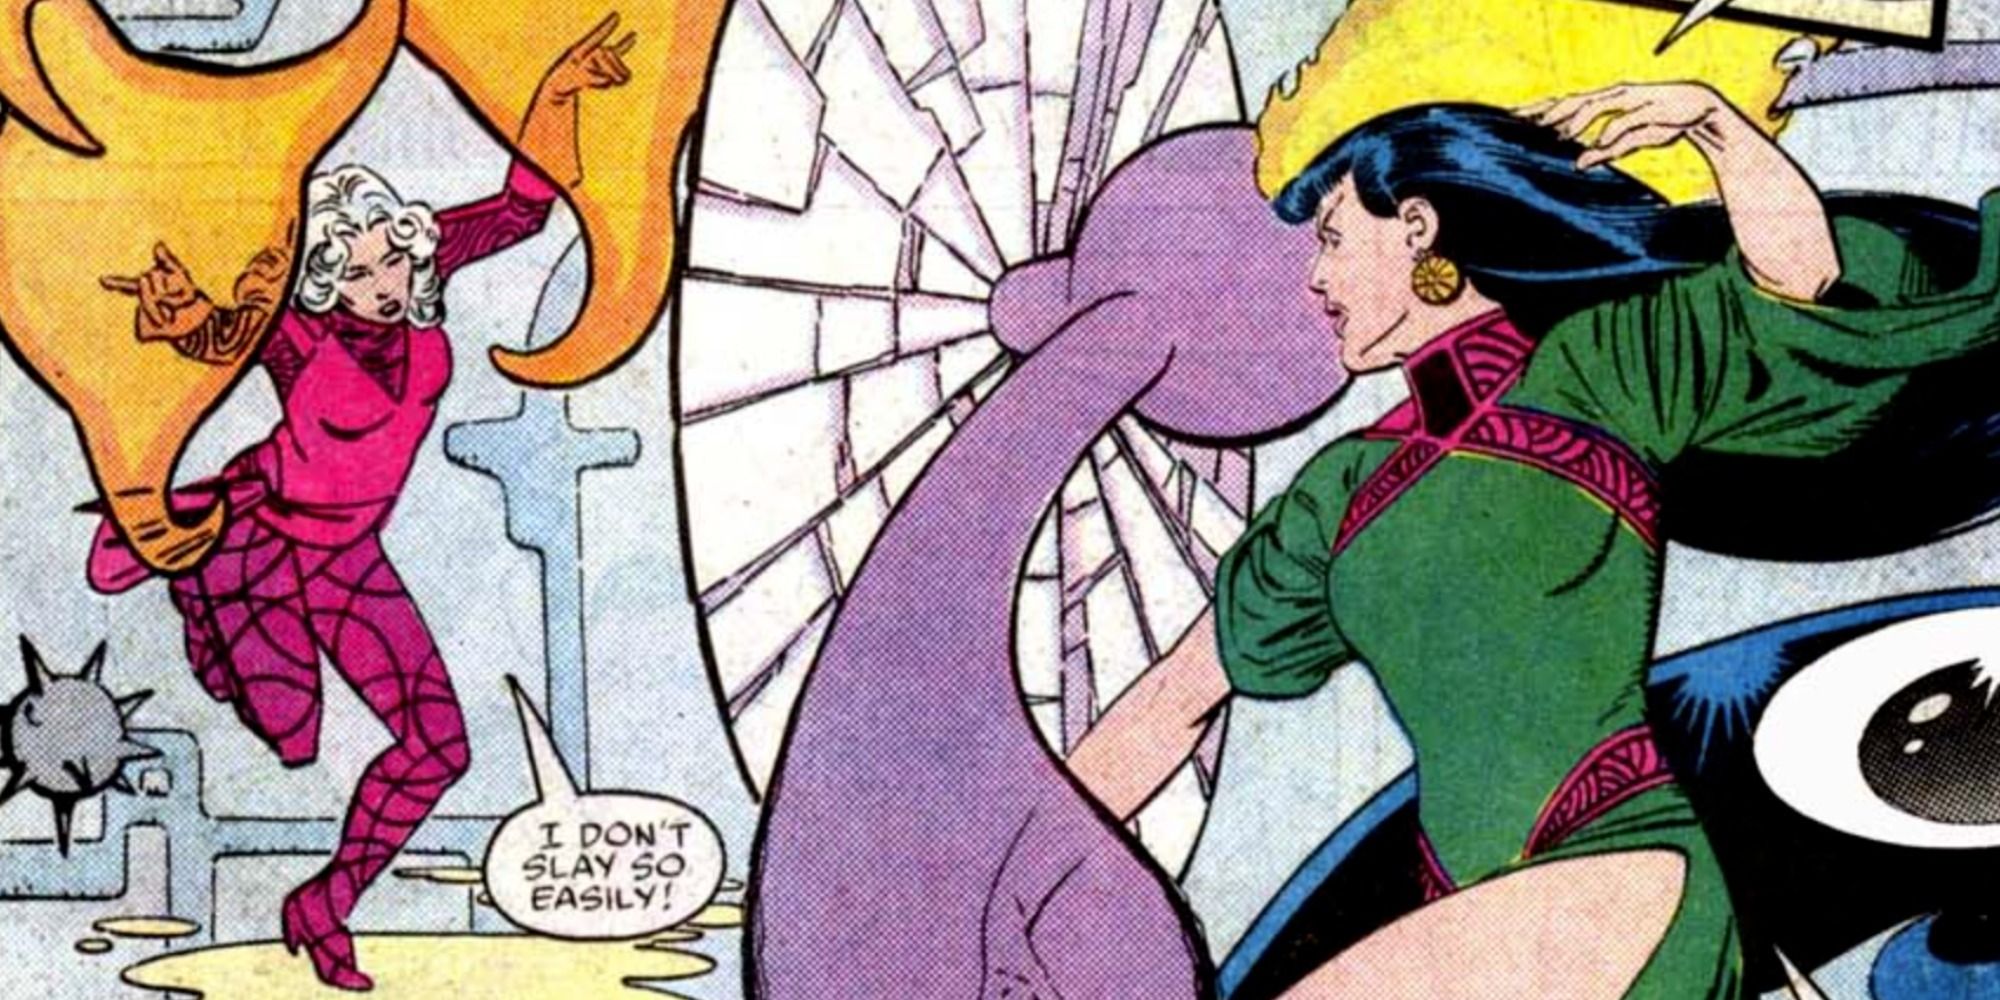 Clea fights Umar in Marvel Comics.